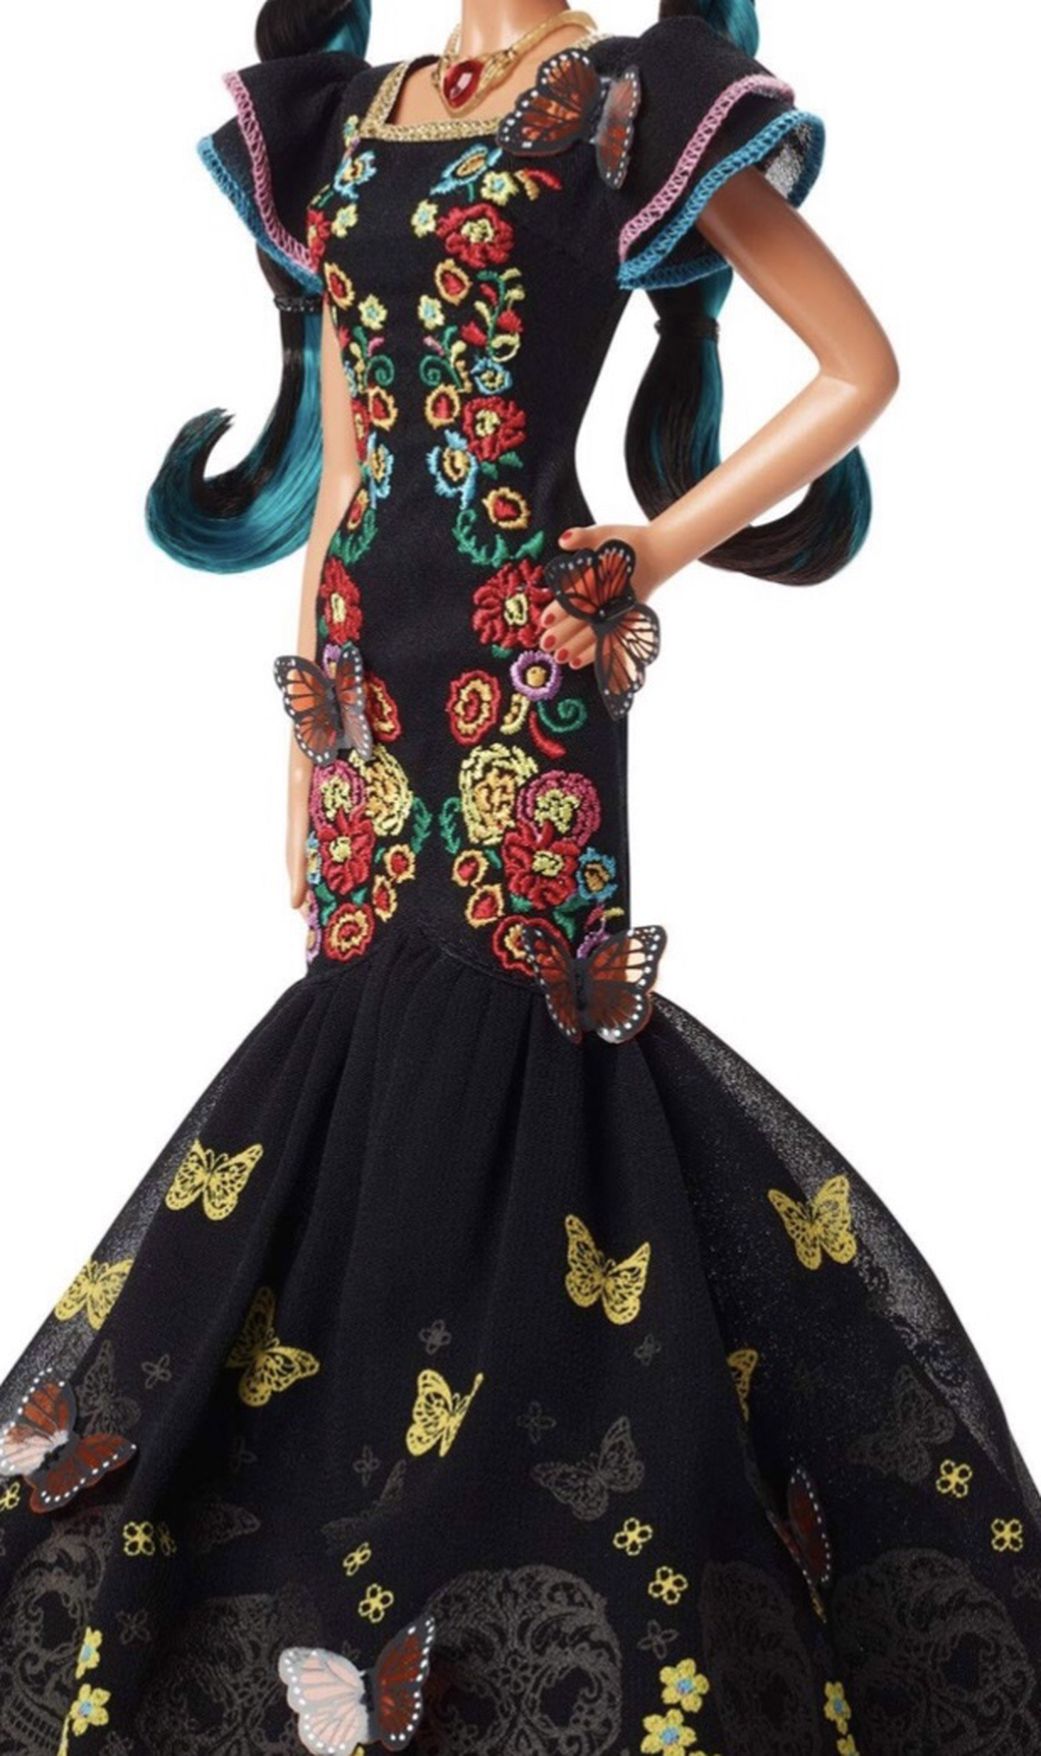 Barbie Dia De Muertos Doll